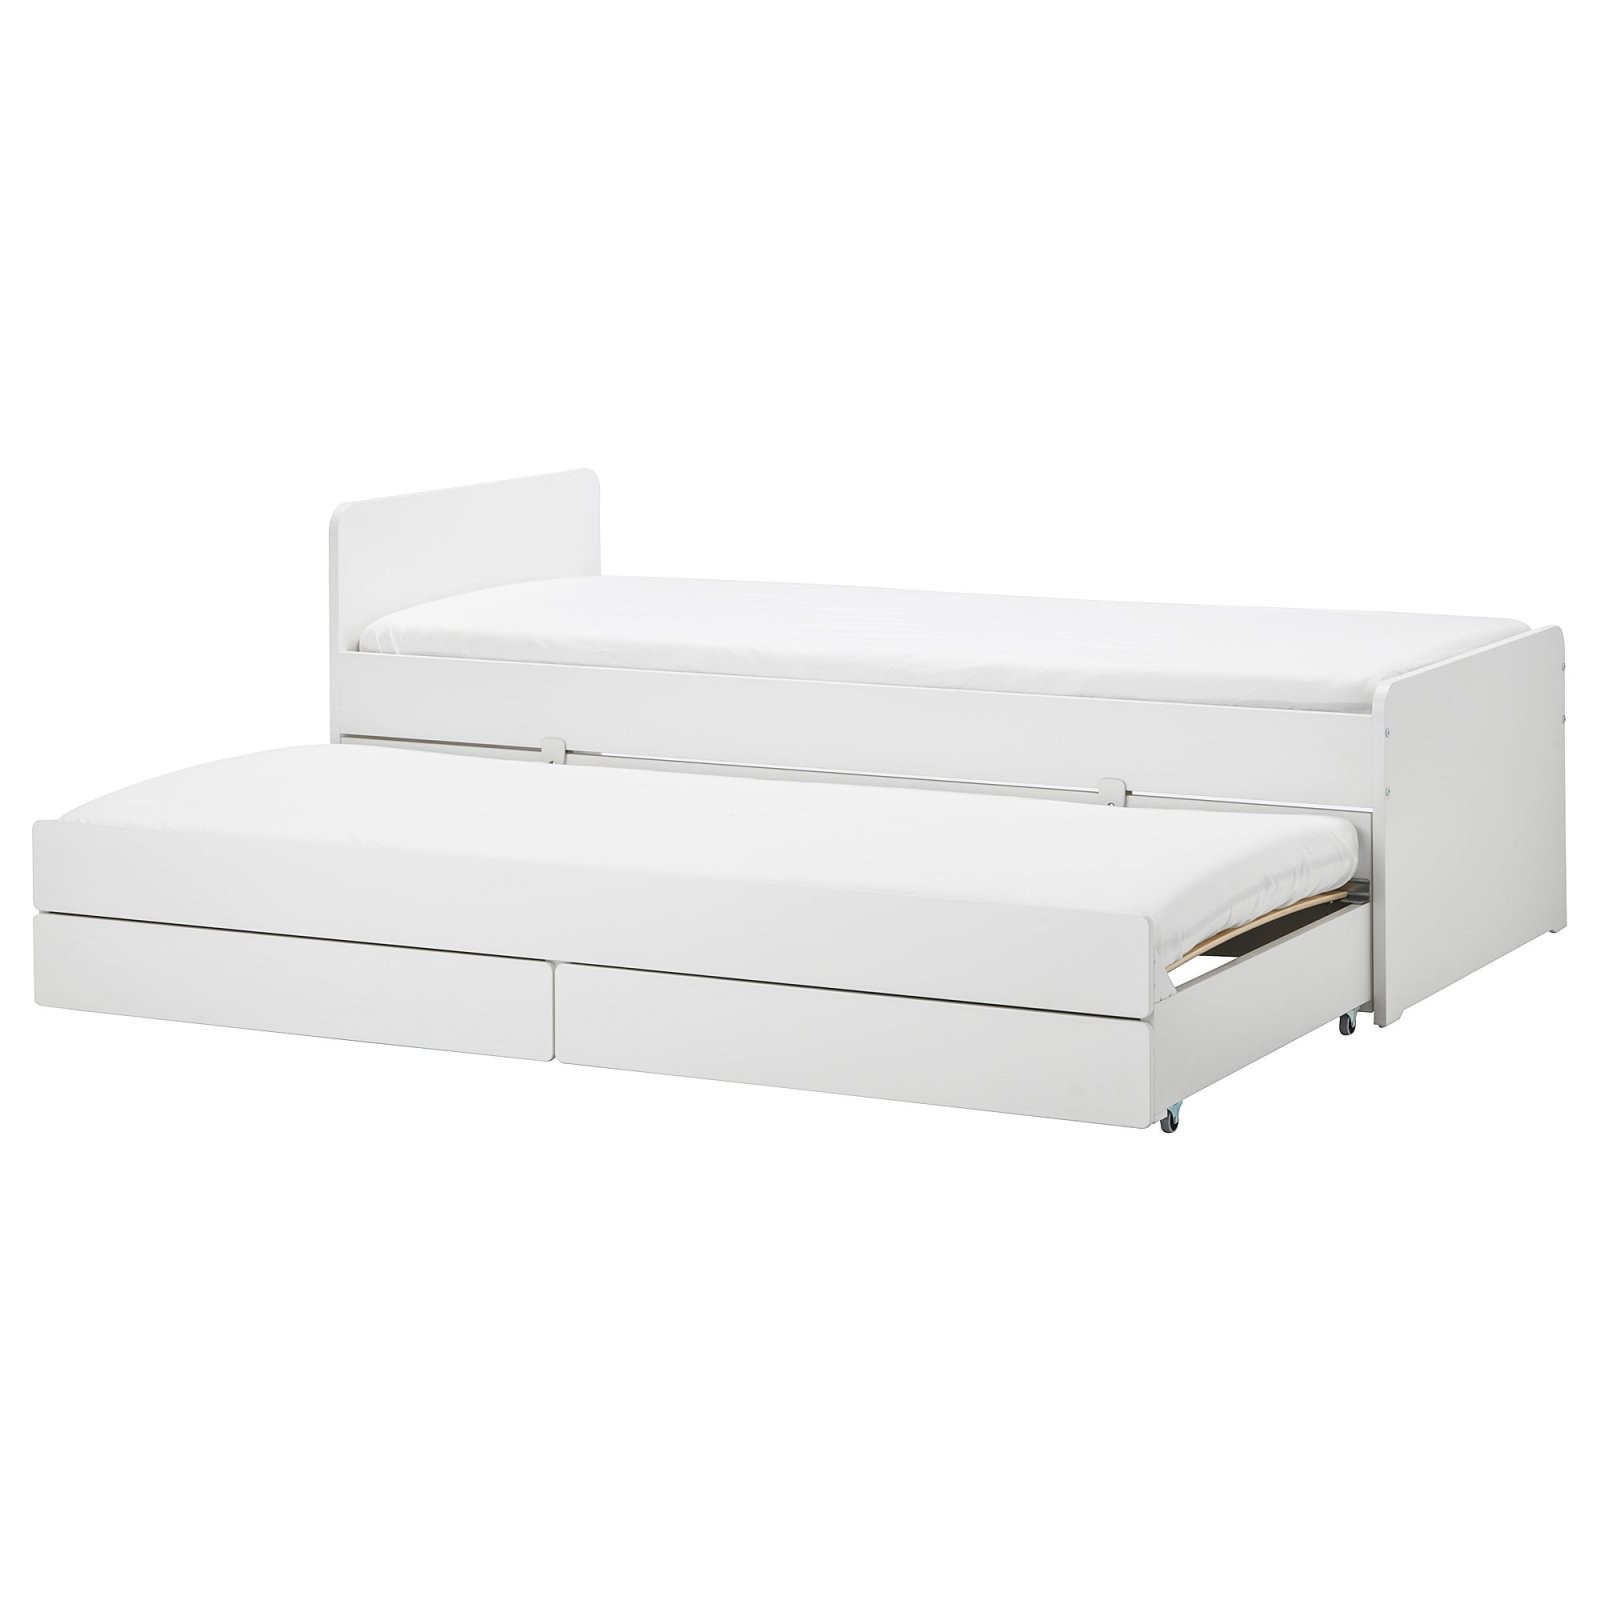 Släkt Bettgestell Unterbett+Aufbewahrung  Weiß  Ikea von Metallbett 90X200 Weiß Ikea Bild